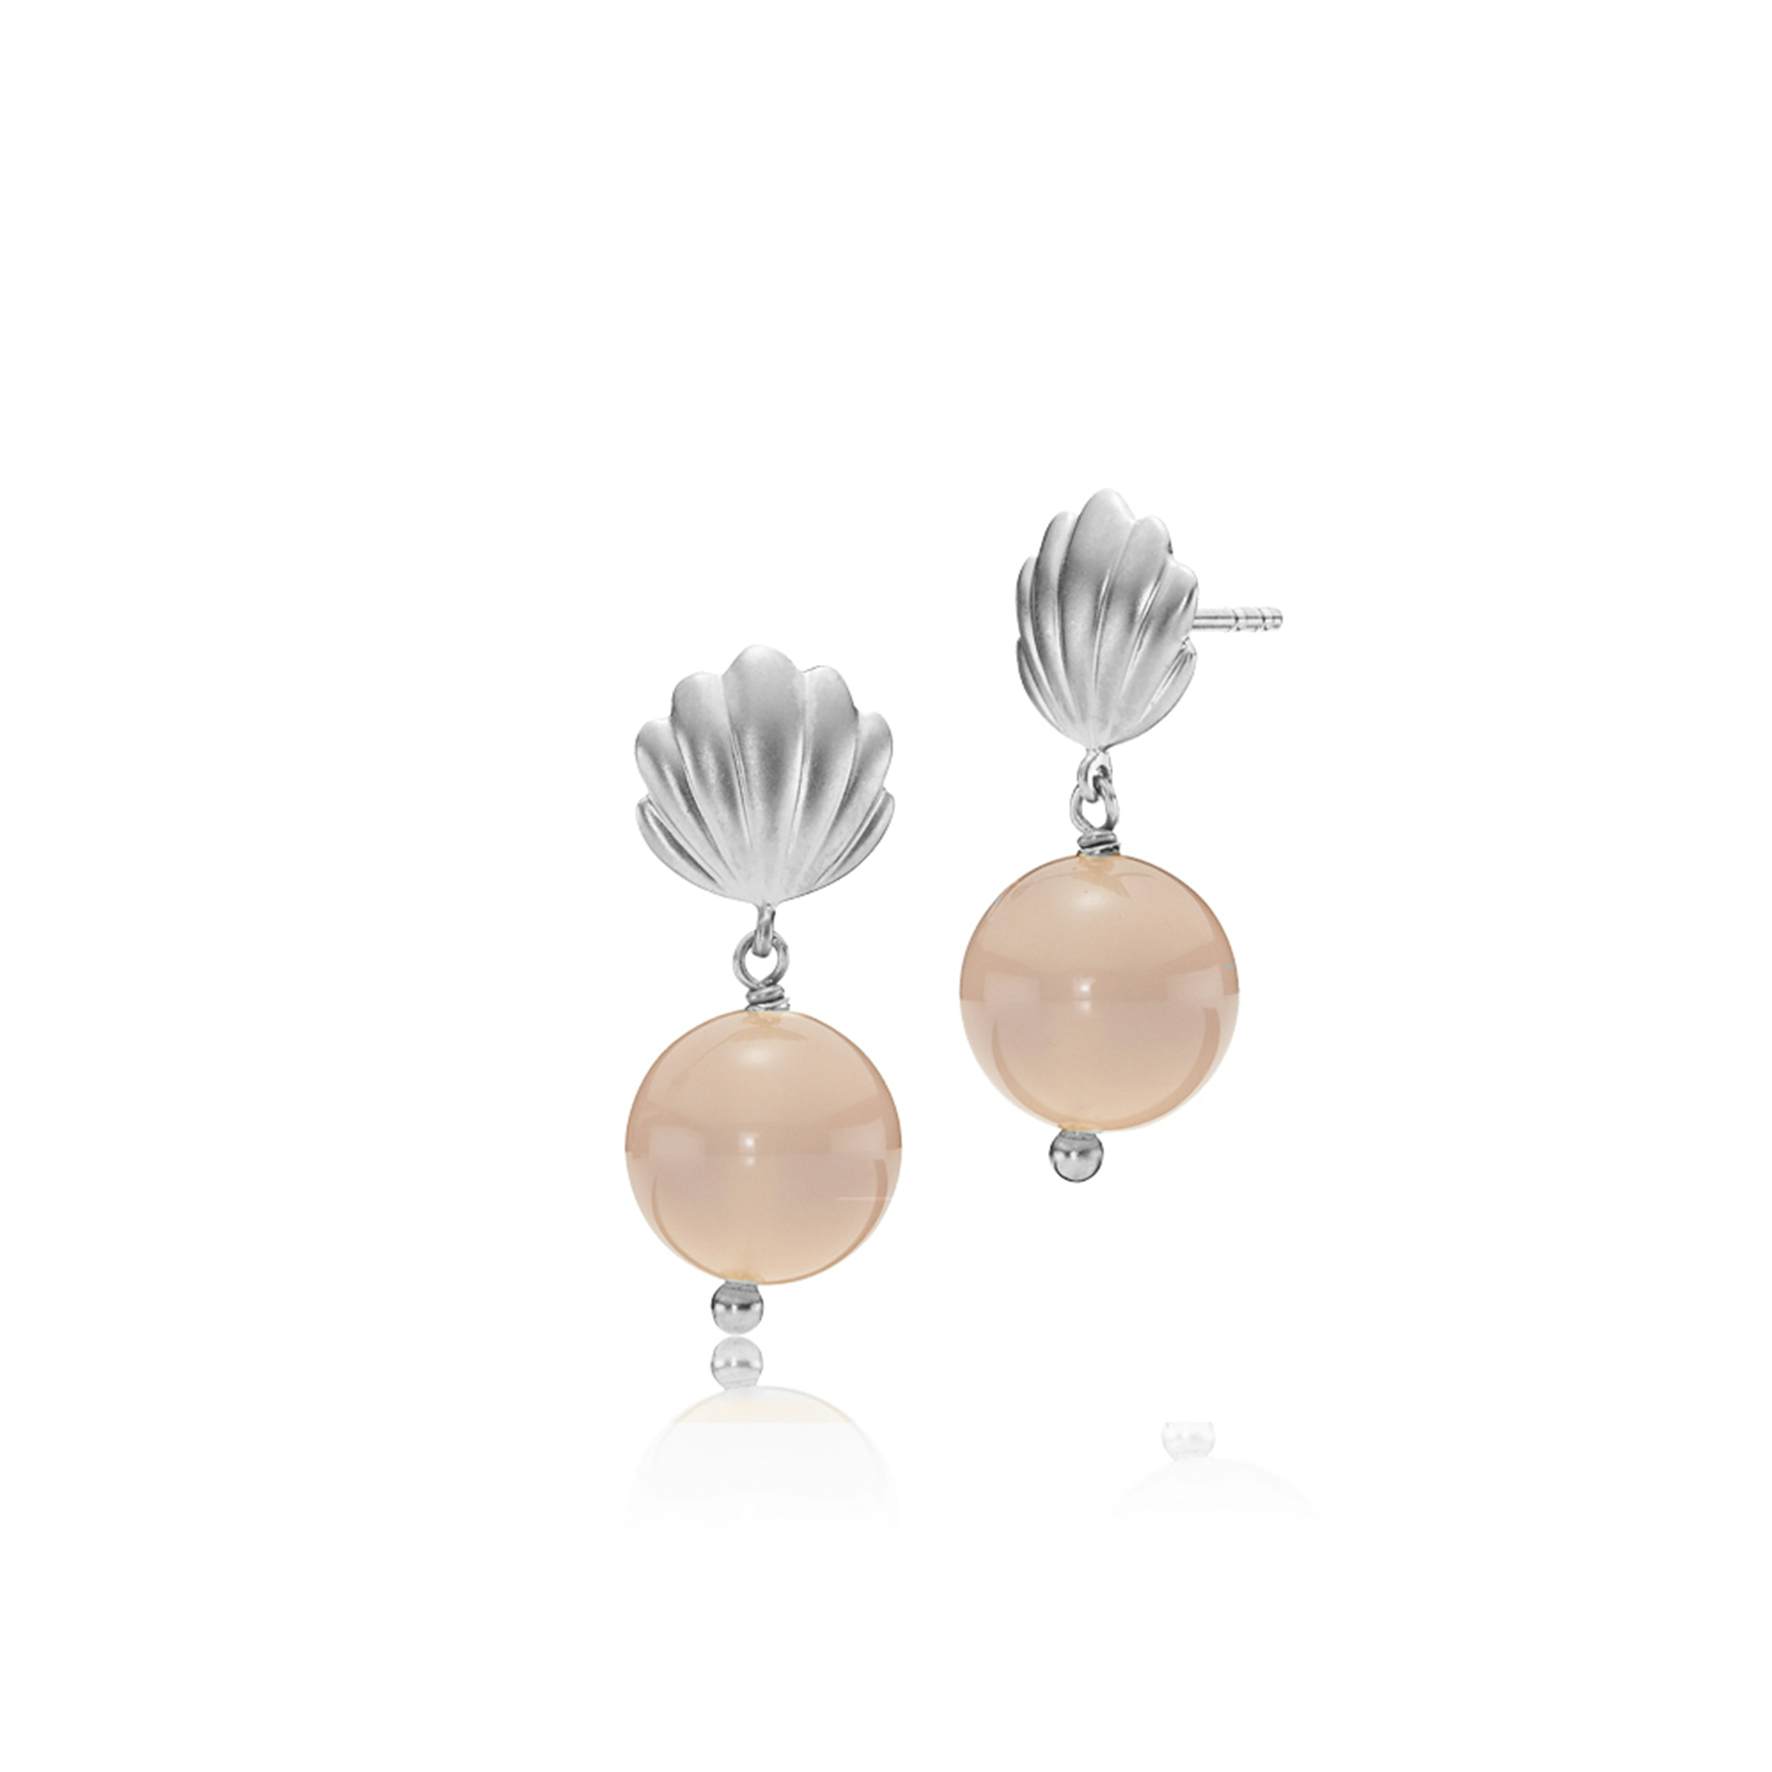 Isabella Pink Earrings fra Izabel Camille i Sølv Sterling 925